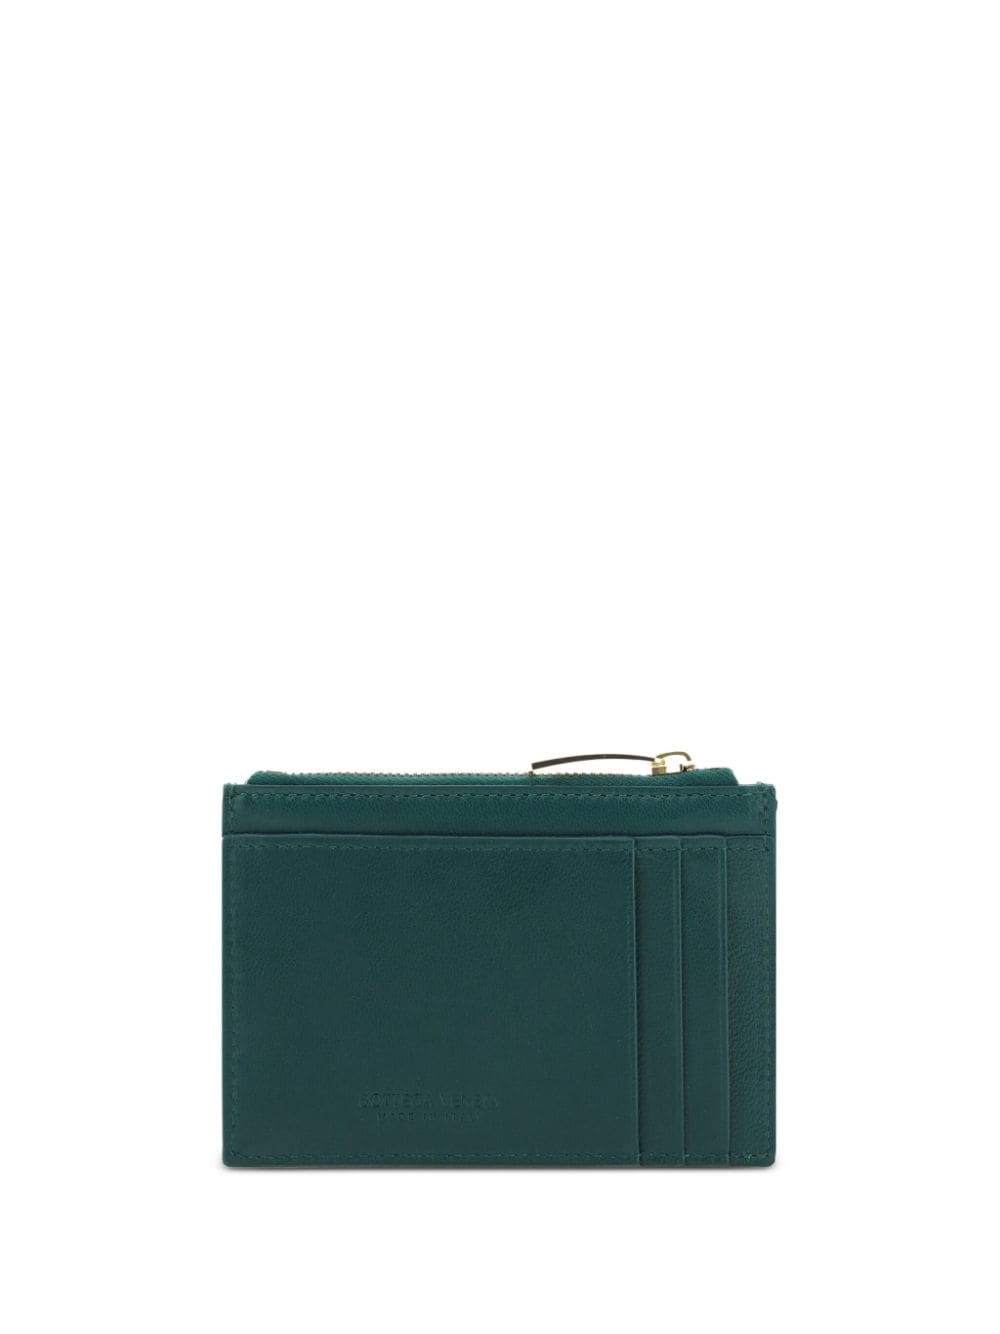 Bottega Veneta Cassette leather wallet - Groen